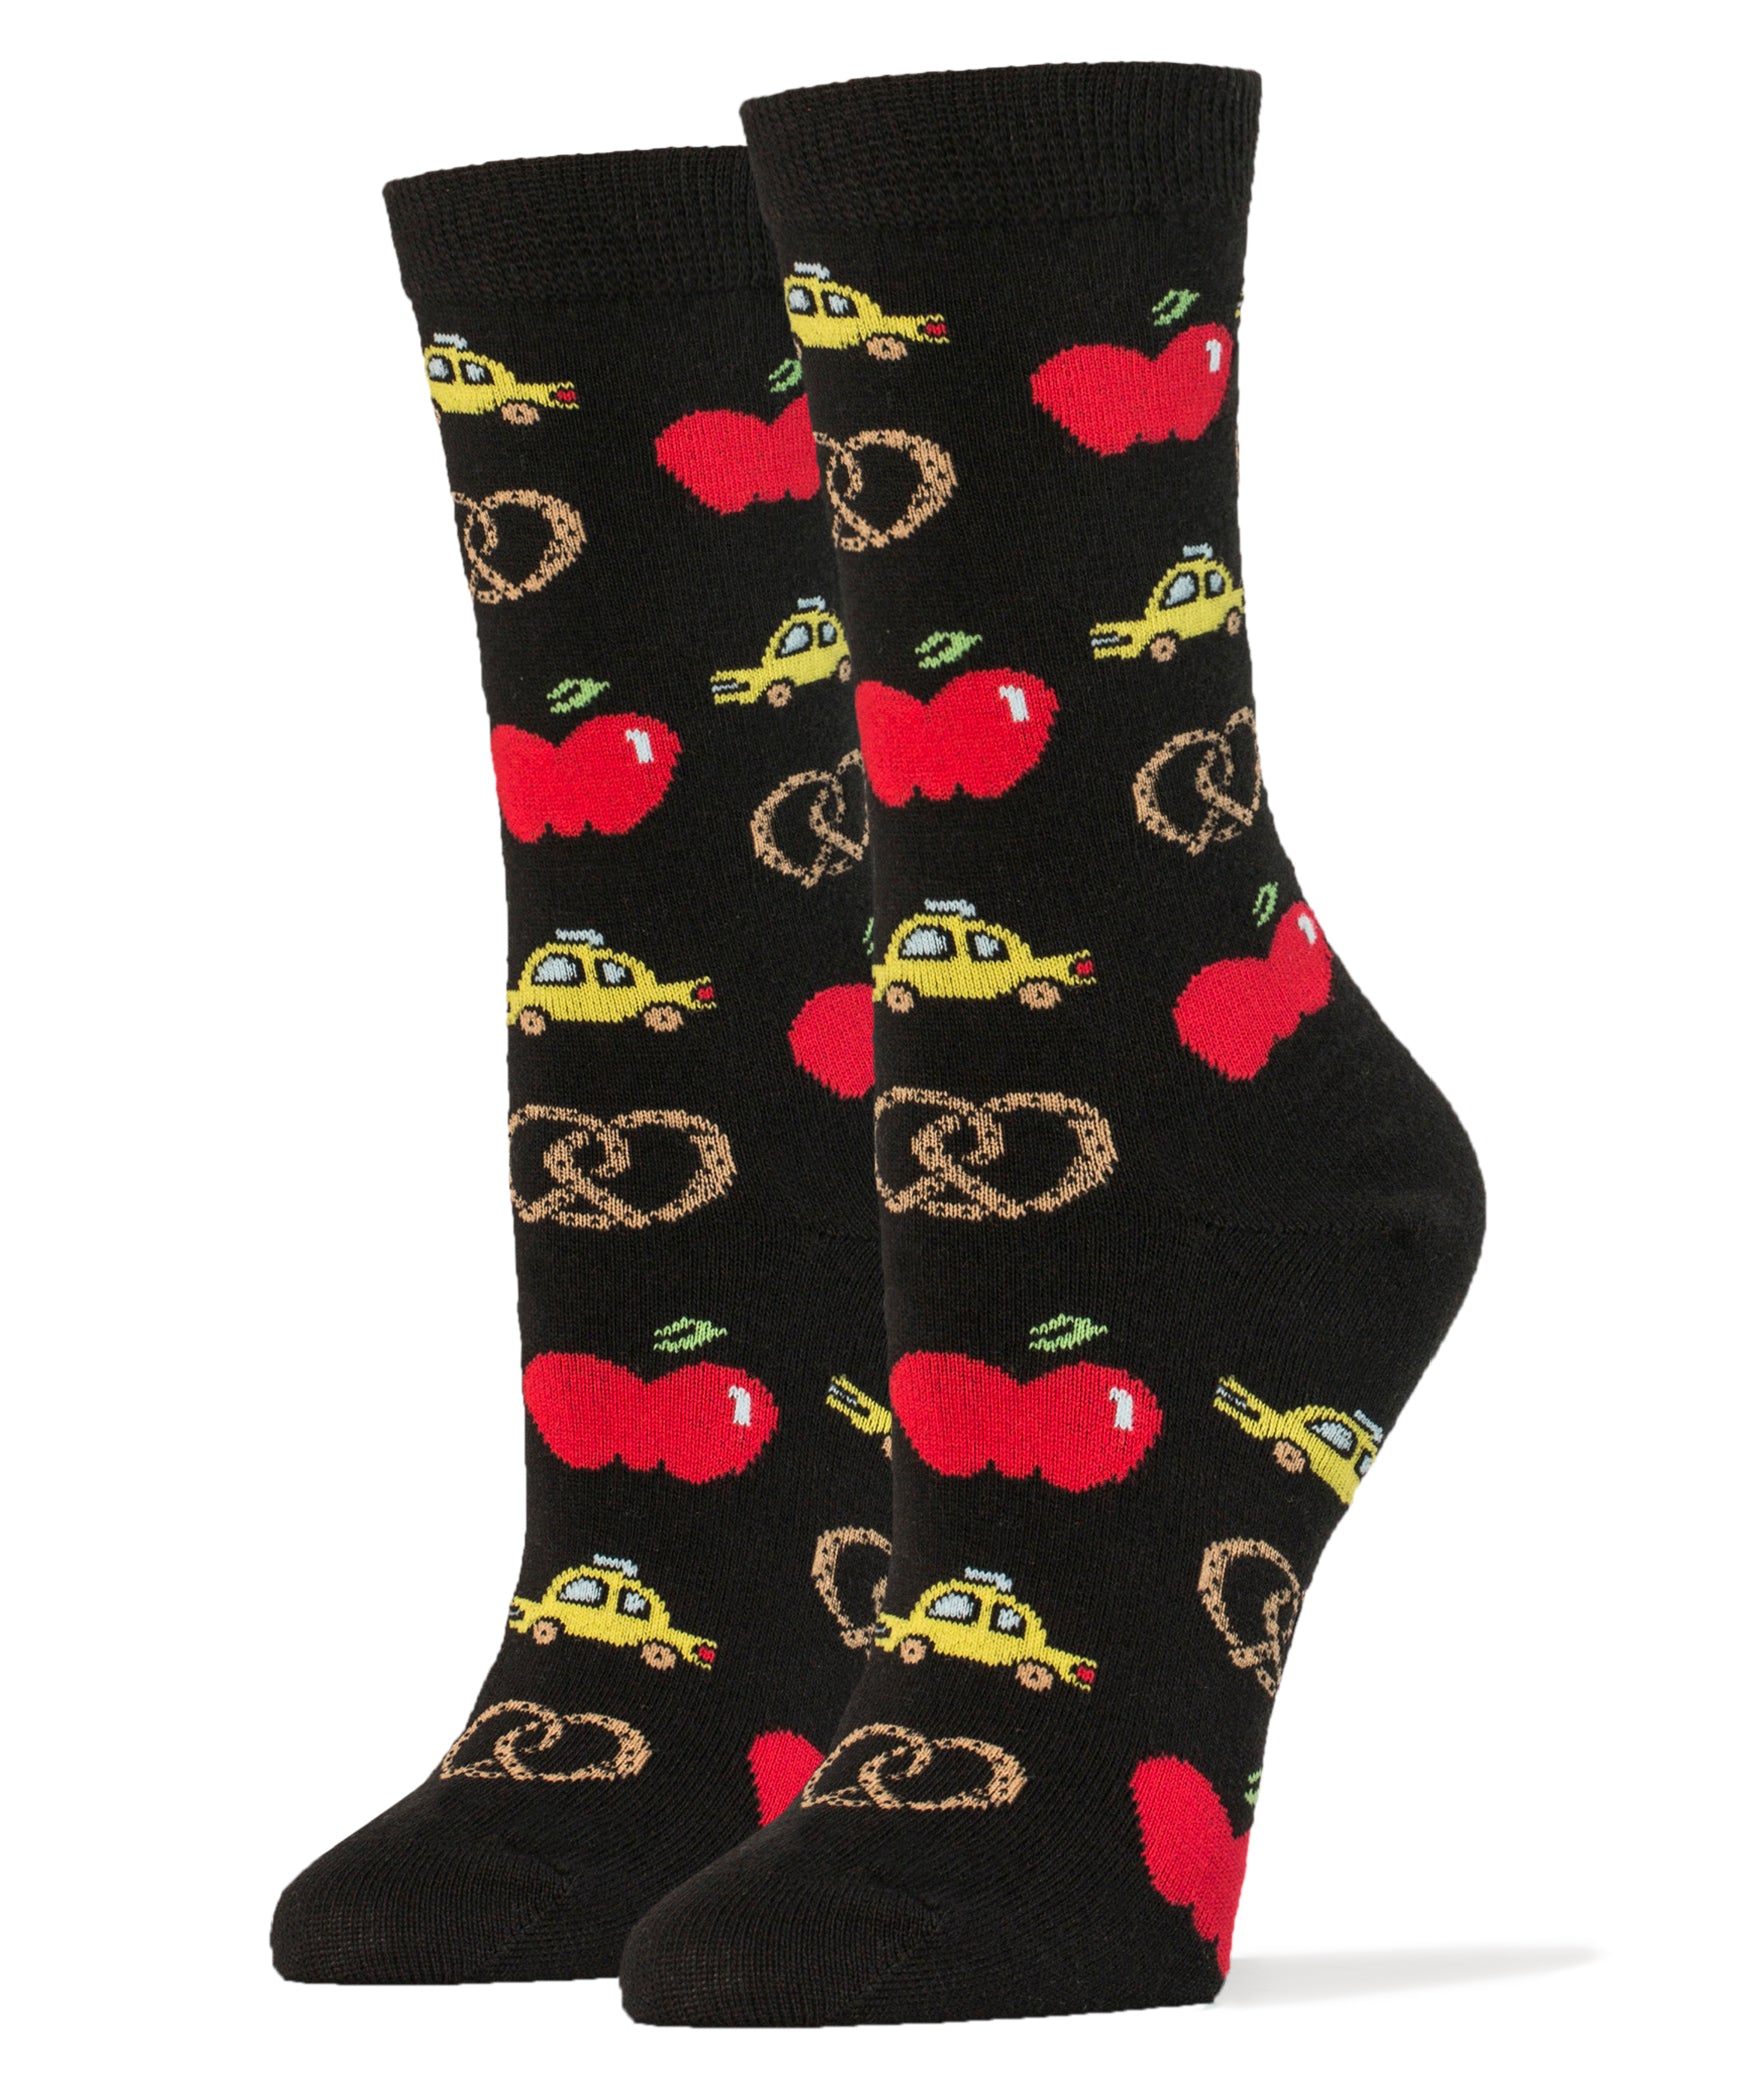 New Yawk Socks | Novelty Crew Socks For Women